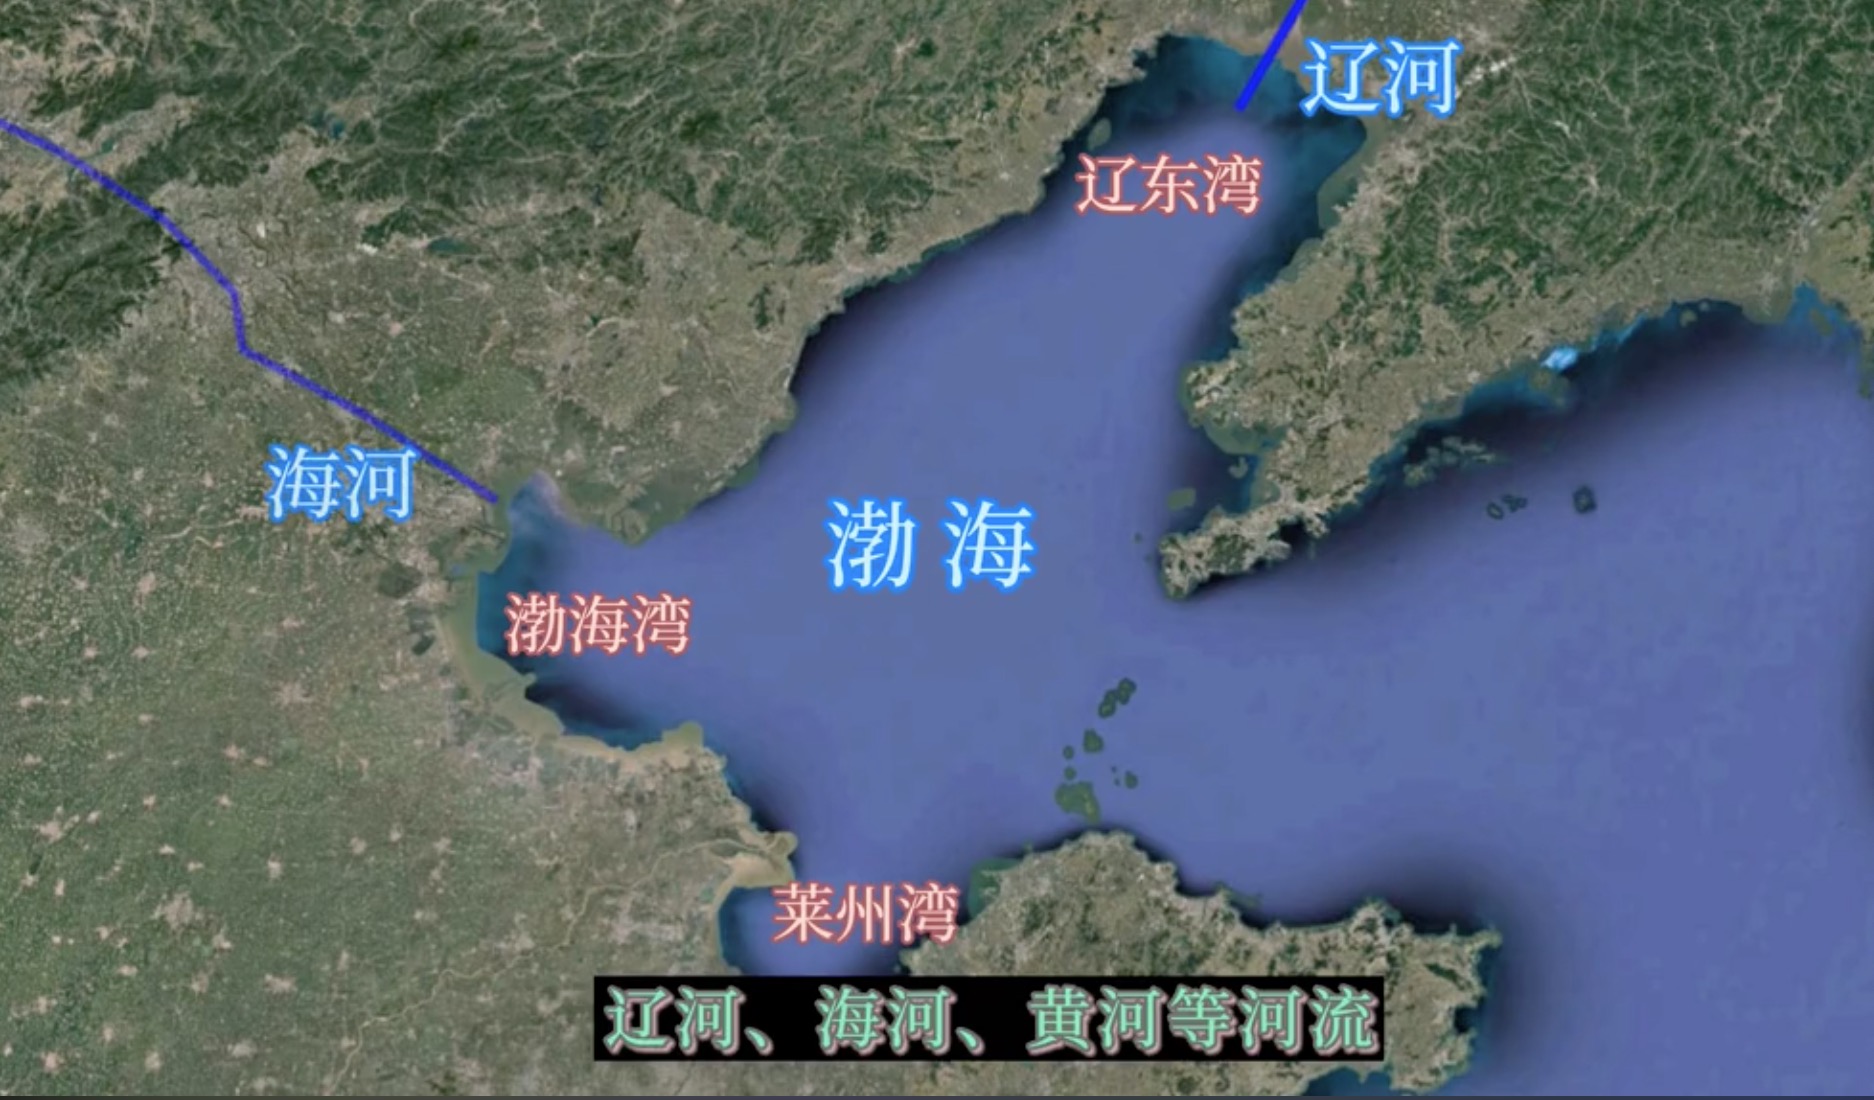 黄河改道,填平内海,是功在千秋的大业!渤海平均水深已不足18米